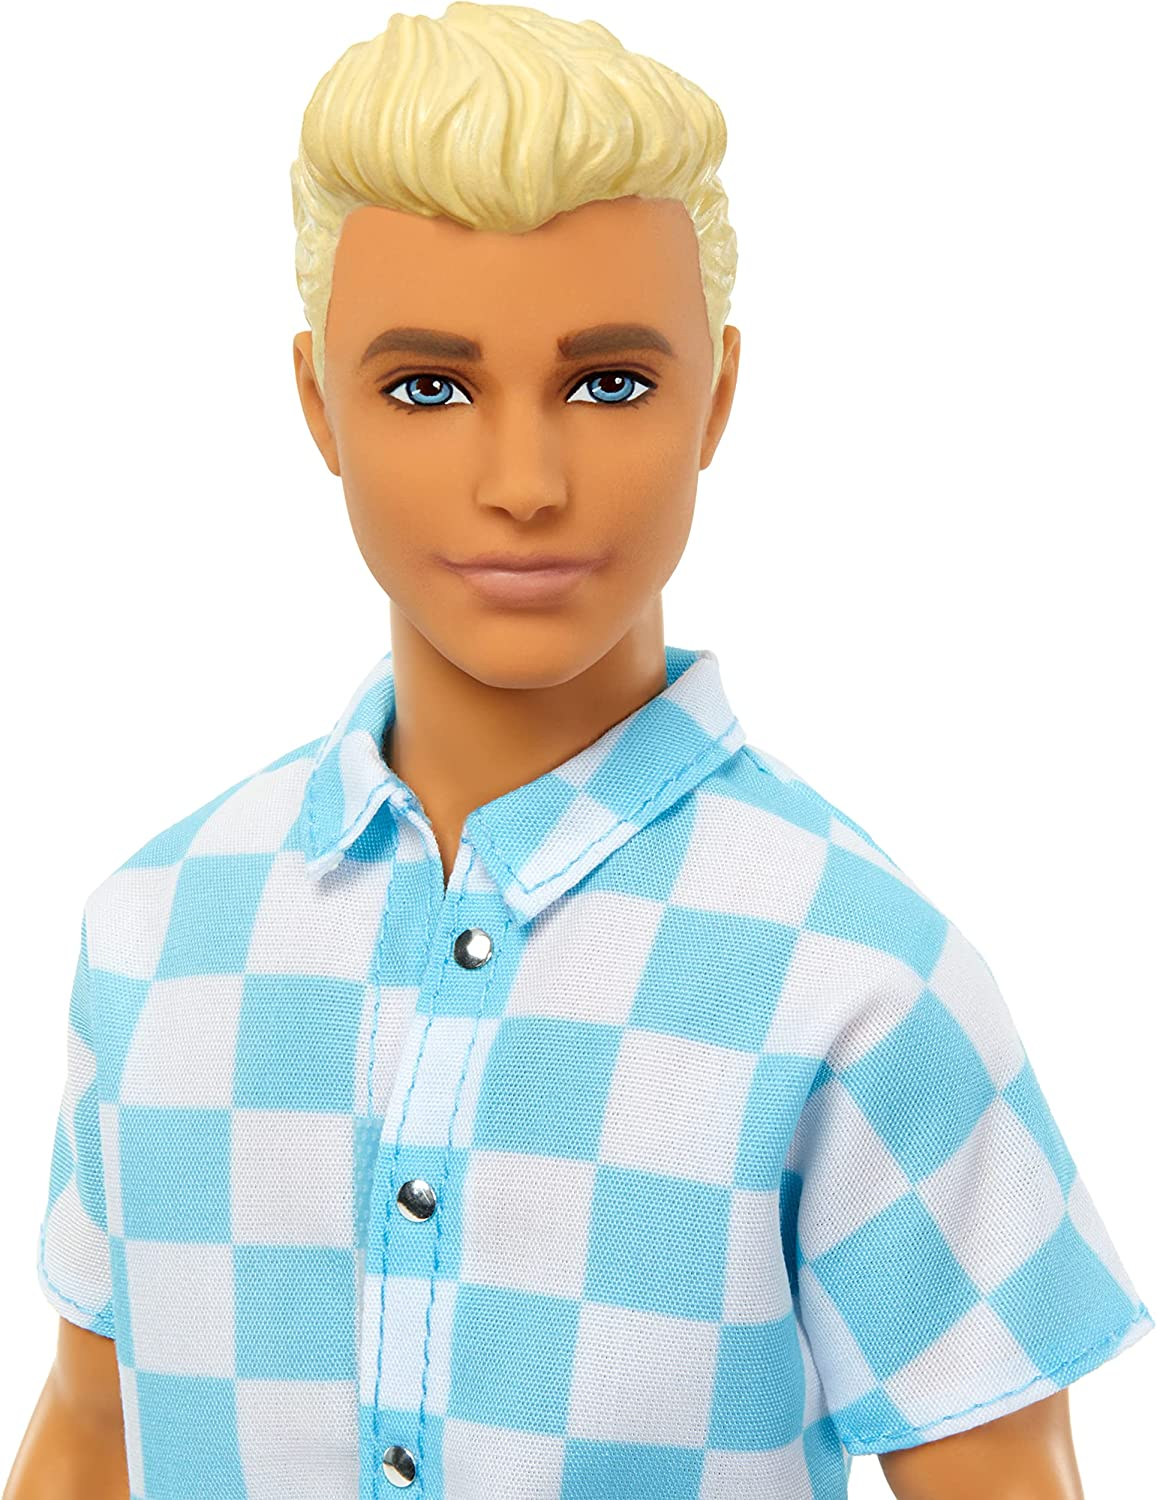 Barbie Boneco Loiro Ken com botão azul e calção de banho, viseira, toalha e acessórios com tema de praia, HPL74